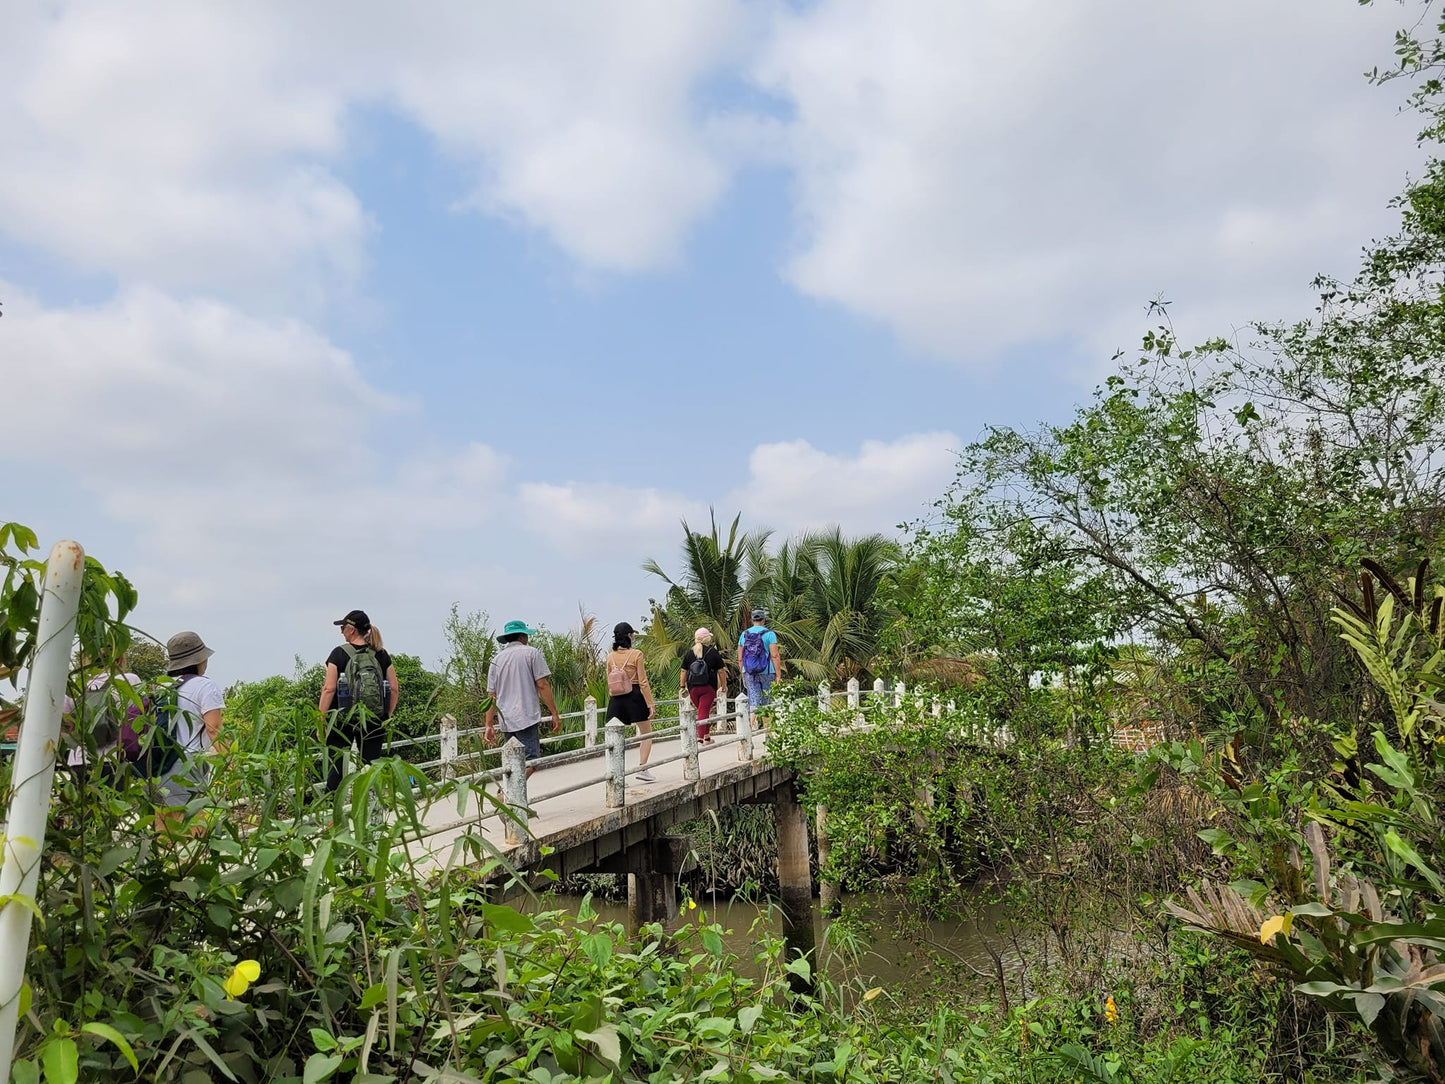 Tour cơ bản 44BC: (1,5 NGÀY) Đồng bằng sông Cửu Long: Đạp xe & Đi thuyền, Tinh hoa đảo, Vẻ đẹp nông thôn & Thú vui văn hóa